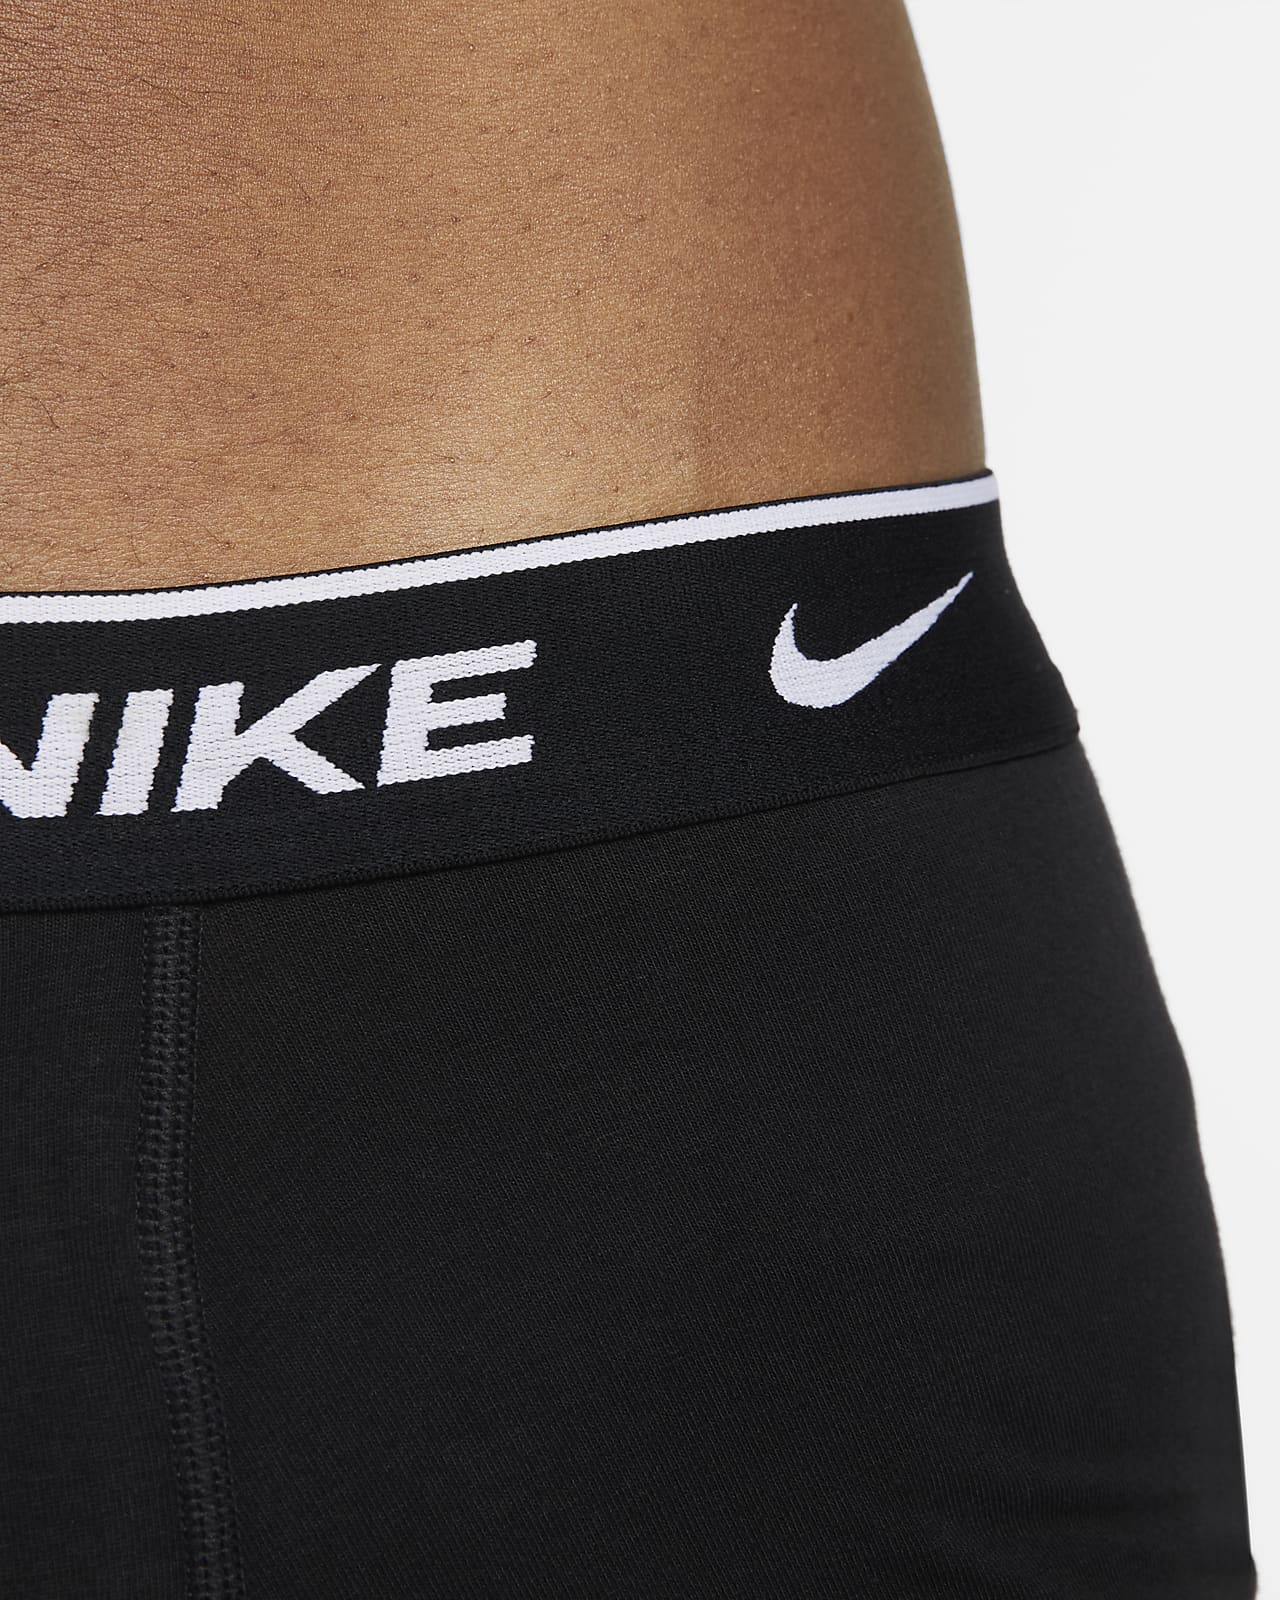 Nike Dri-FIT Essential Cotton Stretch Men's Long Boxer Briefs